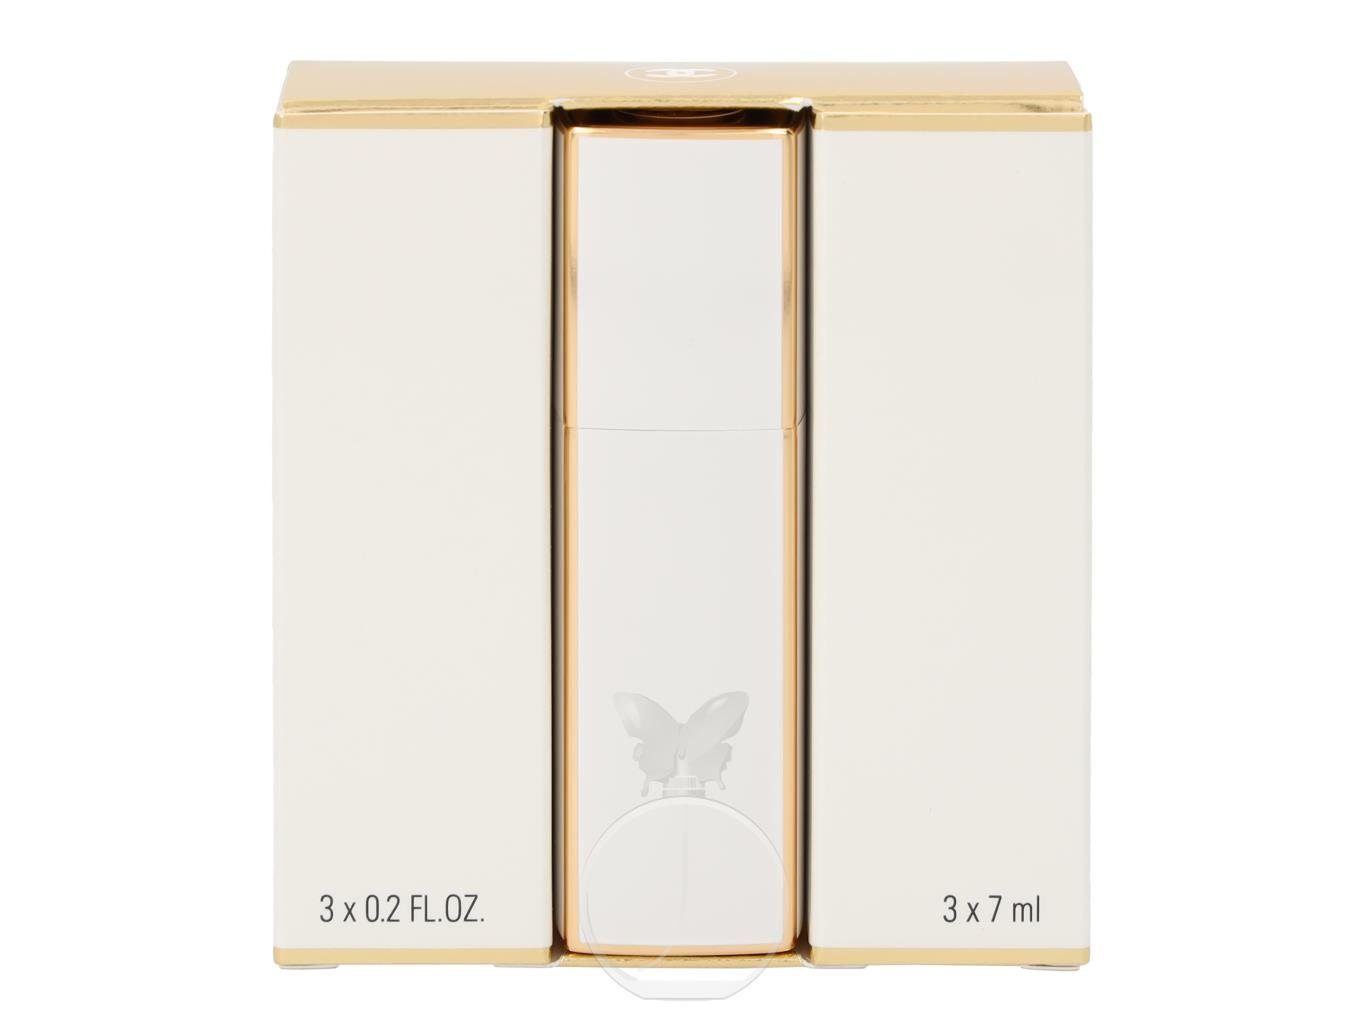 3 Z., Coco Eau Parfum 1-tlg. Intense Mini m. x ml Mademoiselle Chanel Eau de Parfum de CHANEL 7